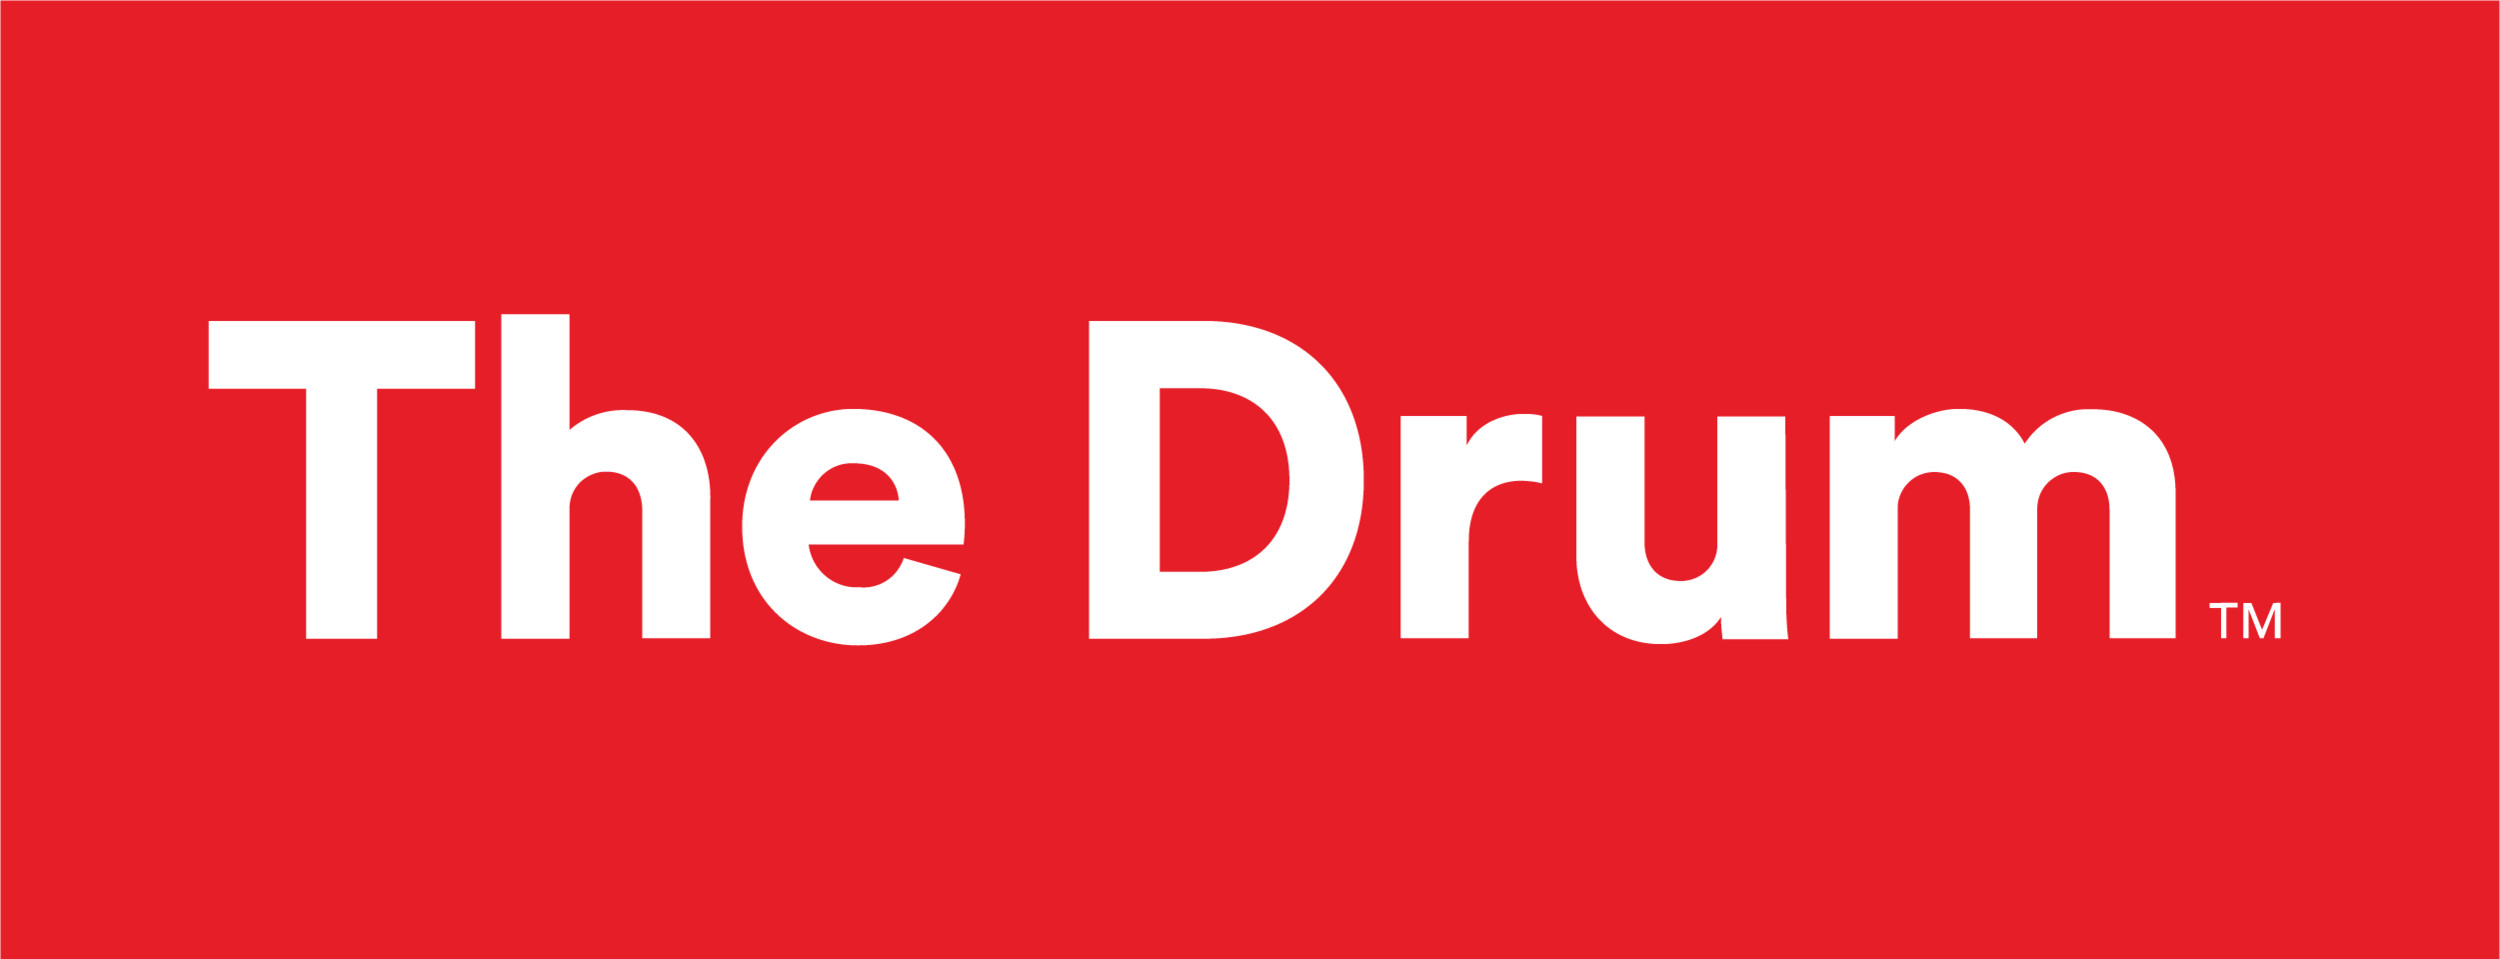 The Drum logo